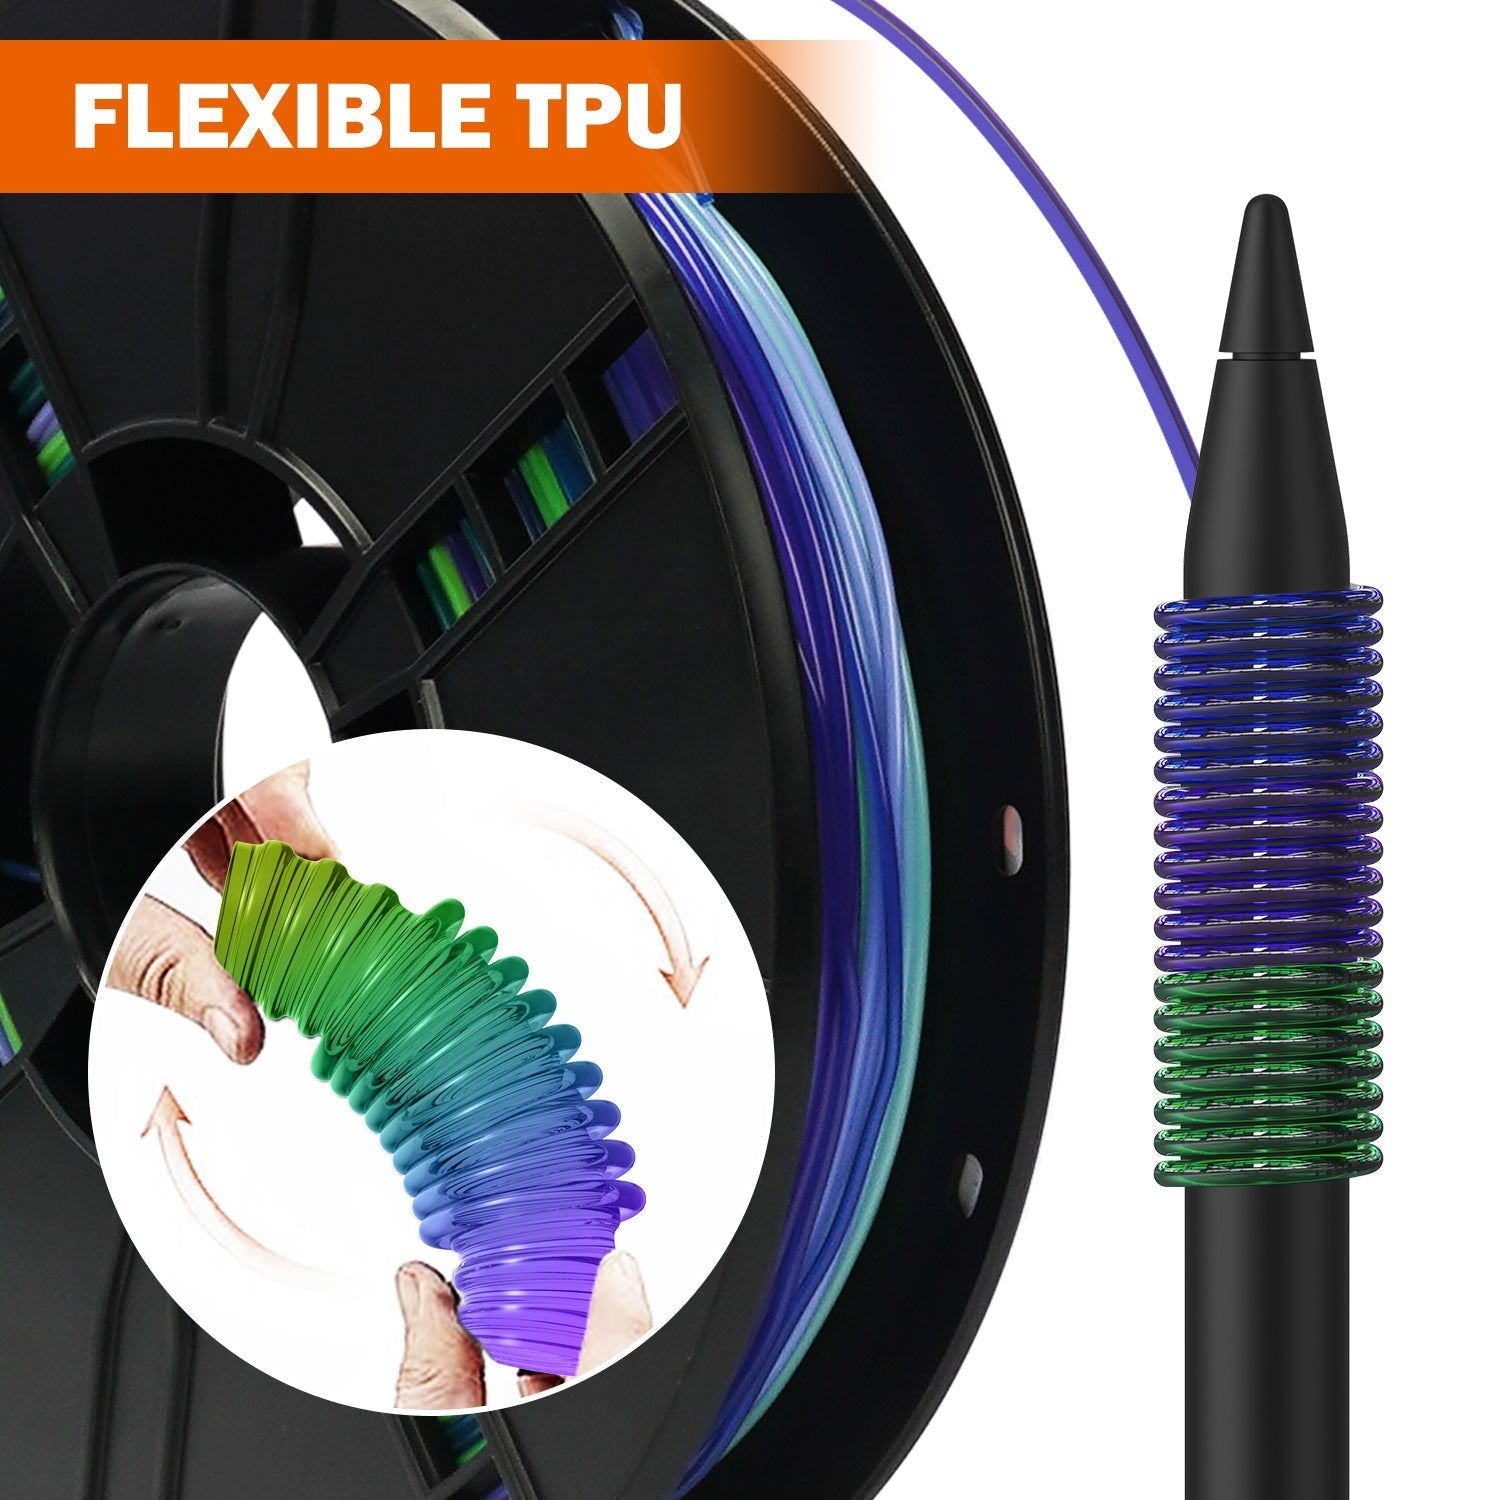 Filament pour imprimante 3D ERYONE 1.75mm Rainbow TPU, précision dimensionnelle +/- 0.05 mm, 0.5kg (1.1 LB) / Bobine